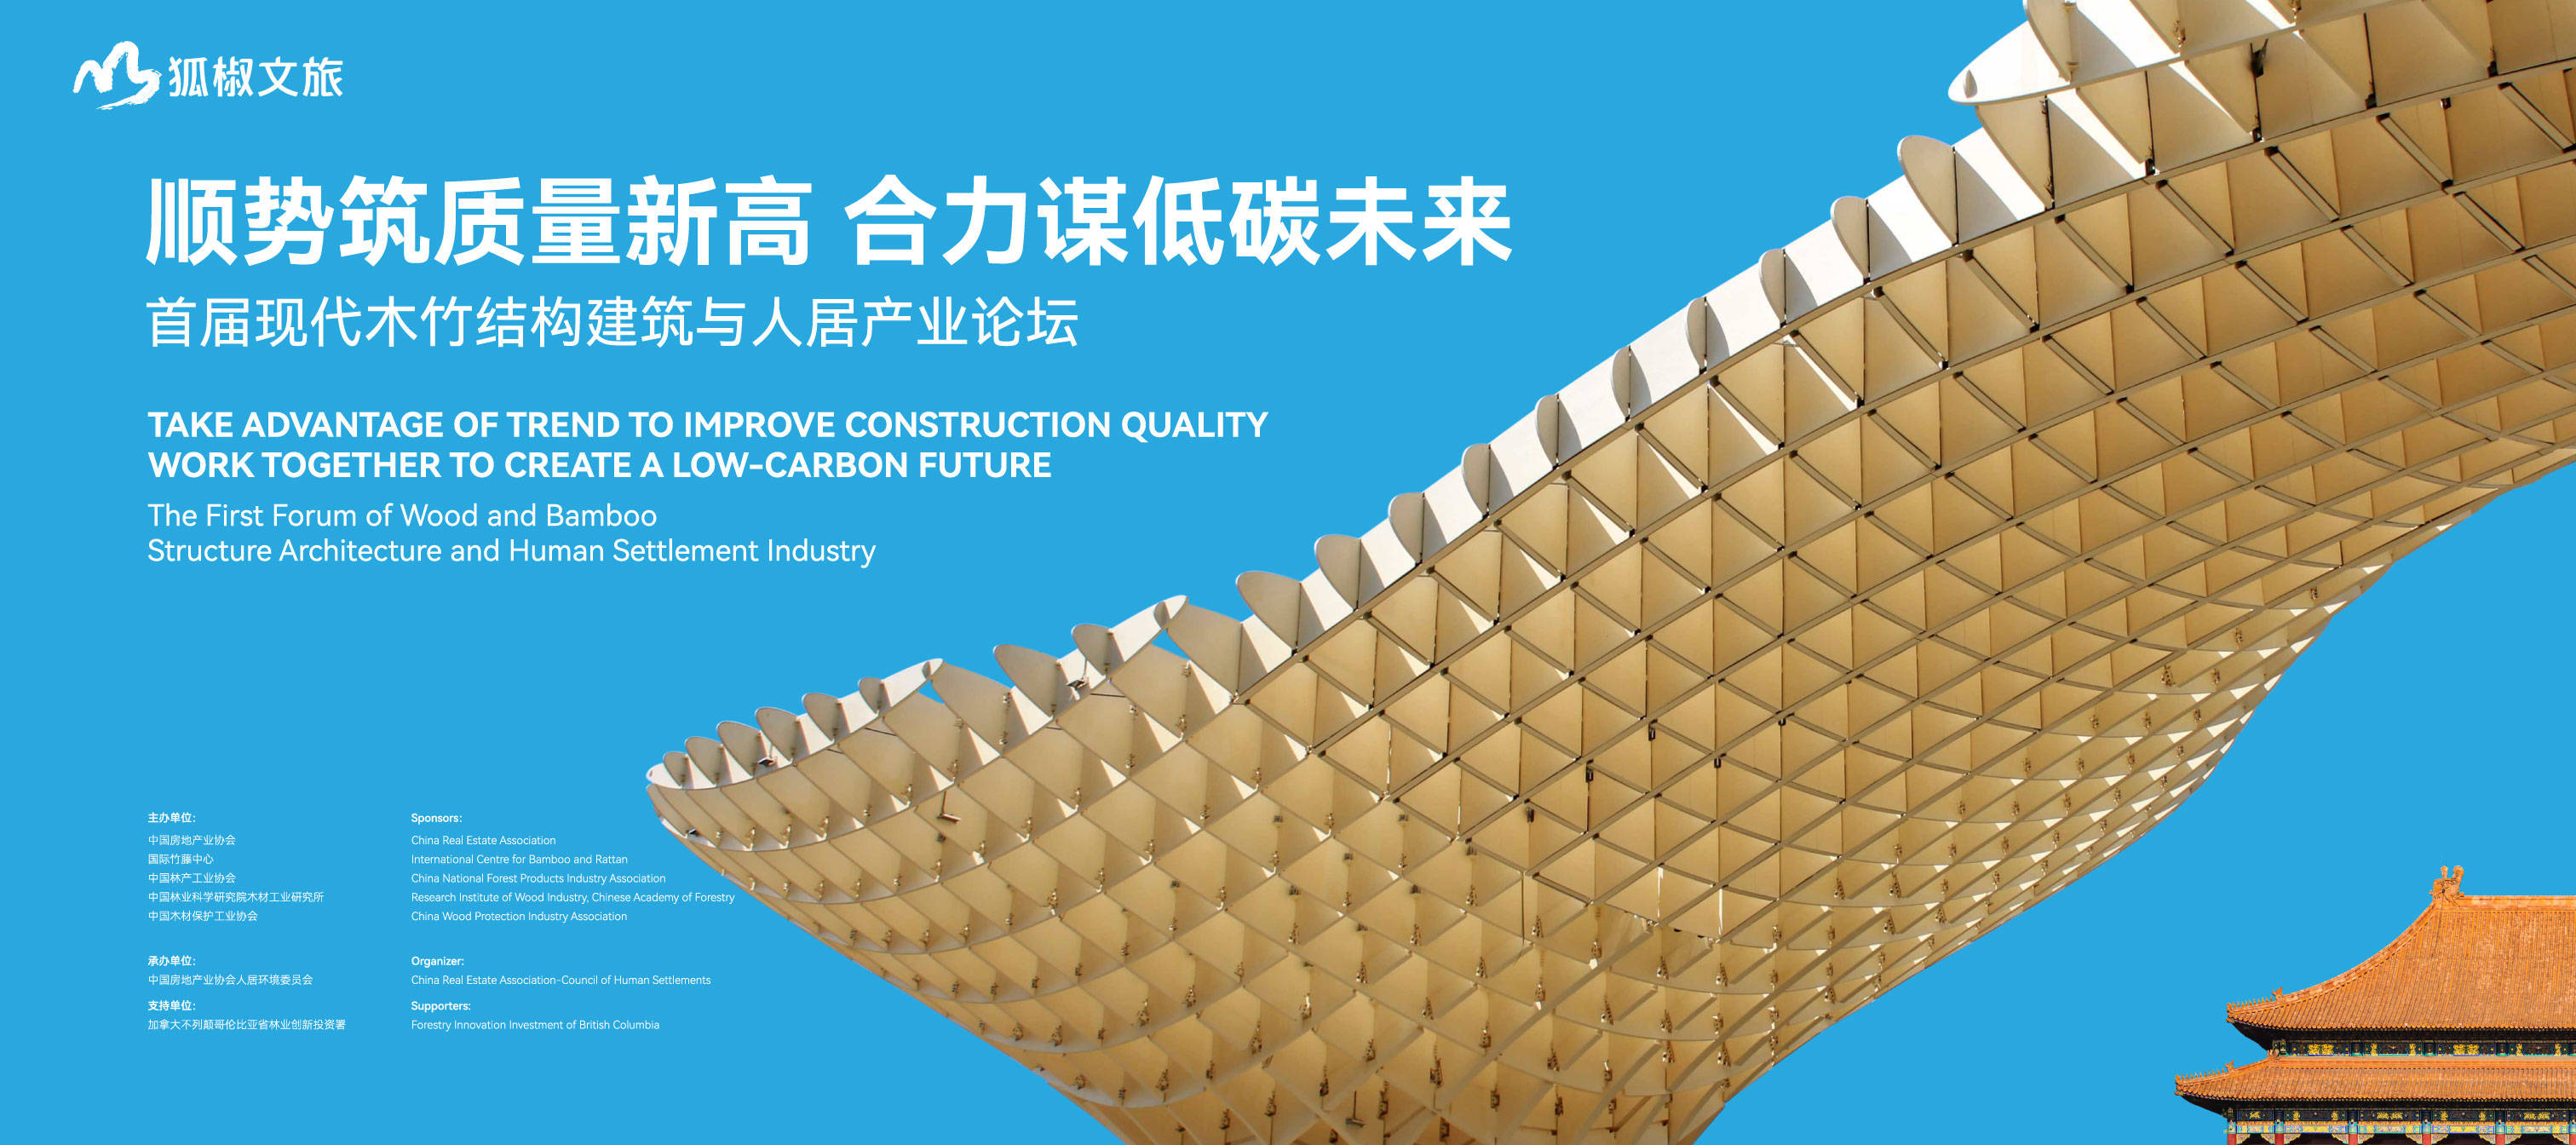 顺势筑质量新高 合力谋低碳未来 首届现代木竹结构建筑与人居产业论坛在京召开